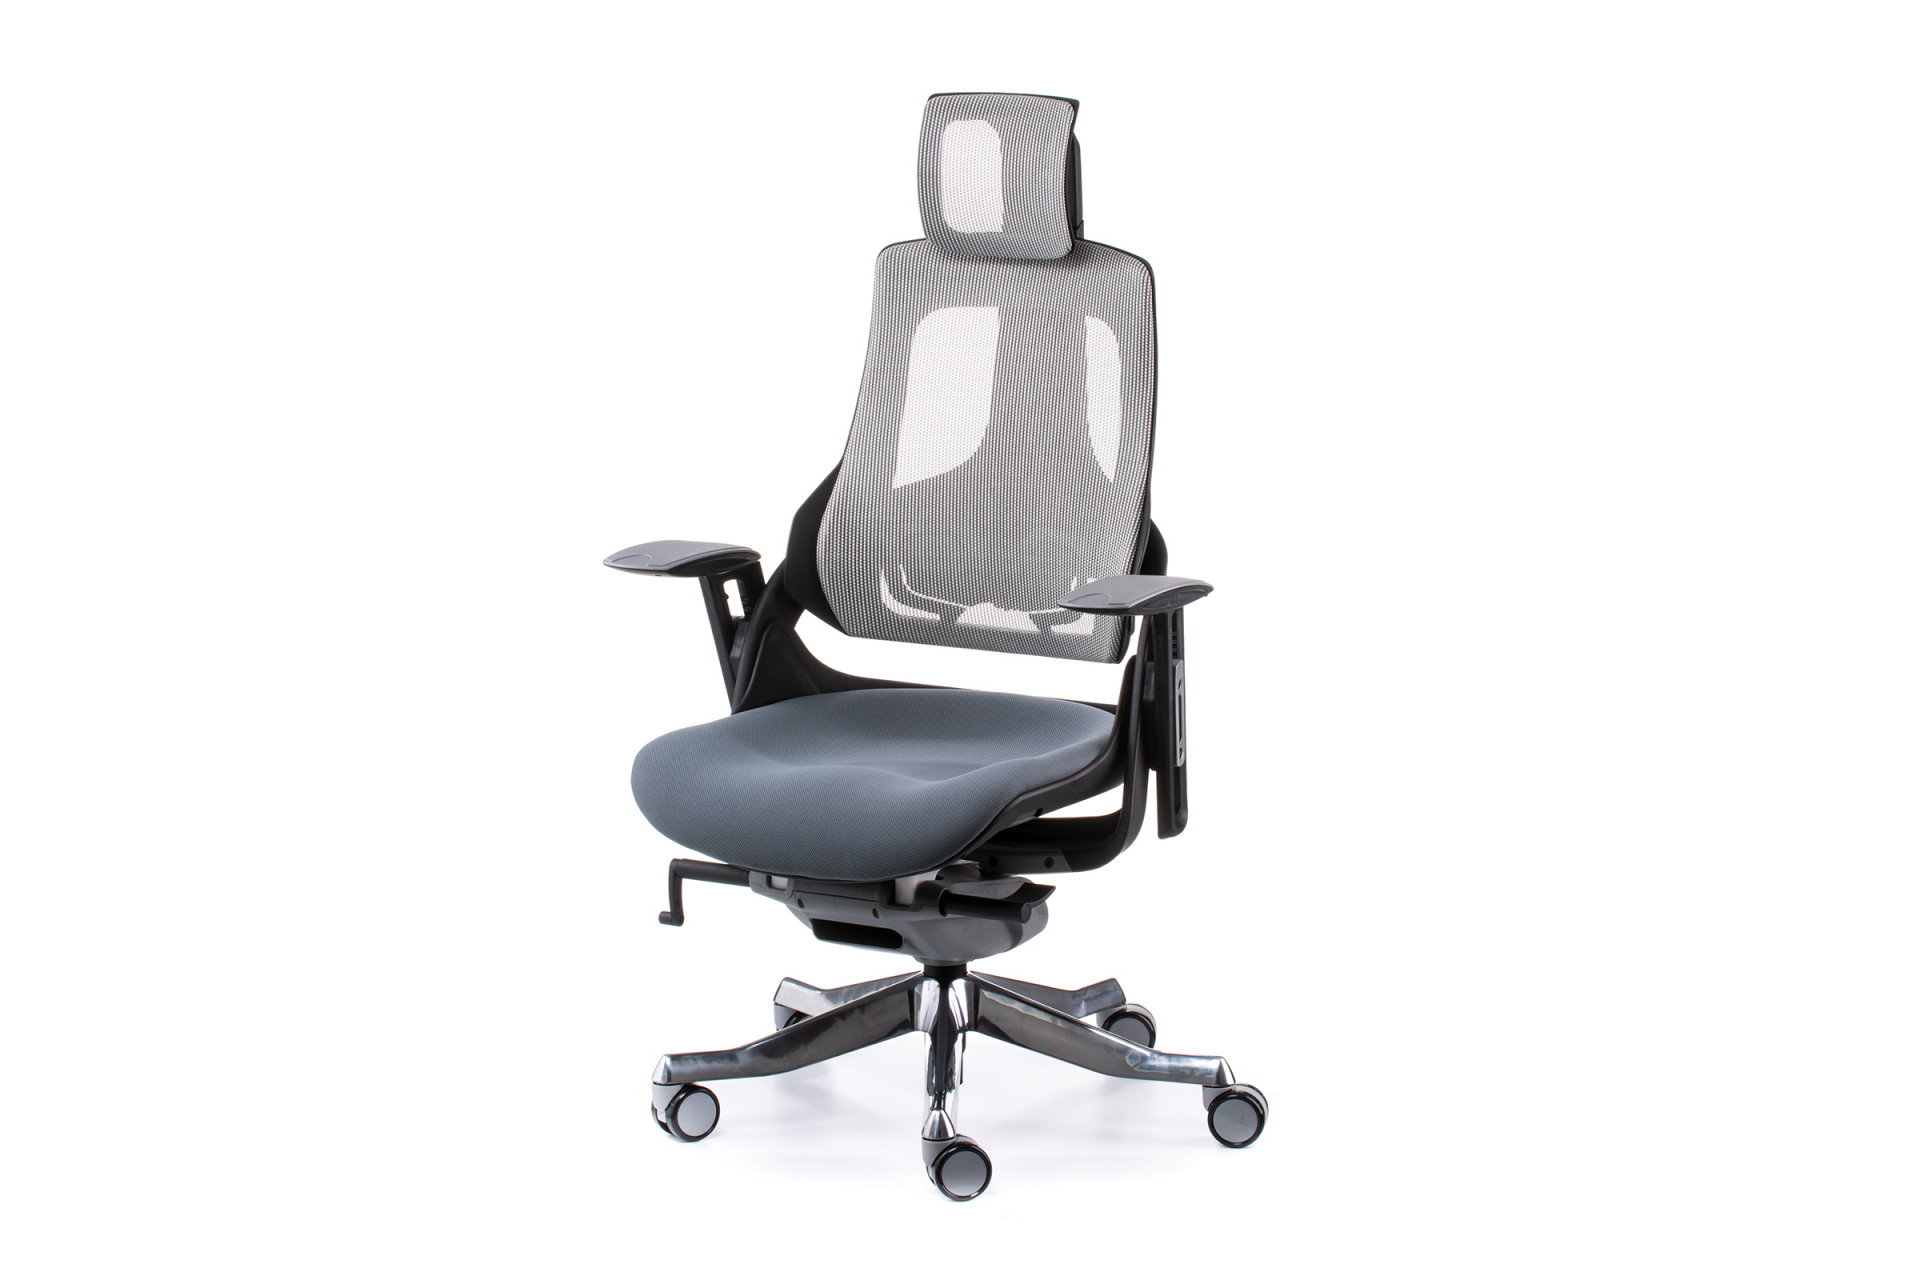 Кресло офисное TPRO- Wau slatеgrey fabric, snowy nеtwork E0796